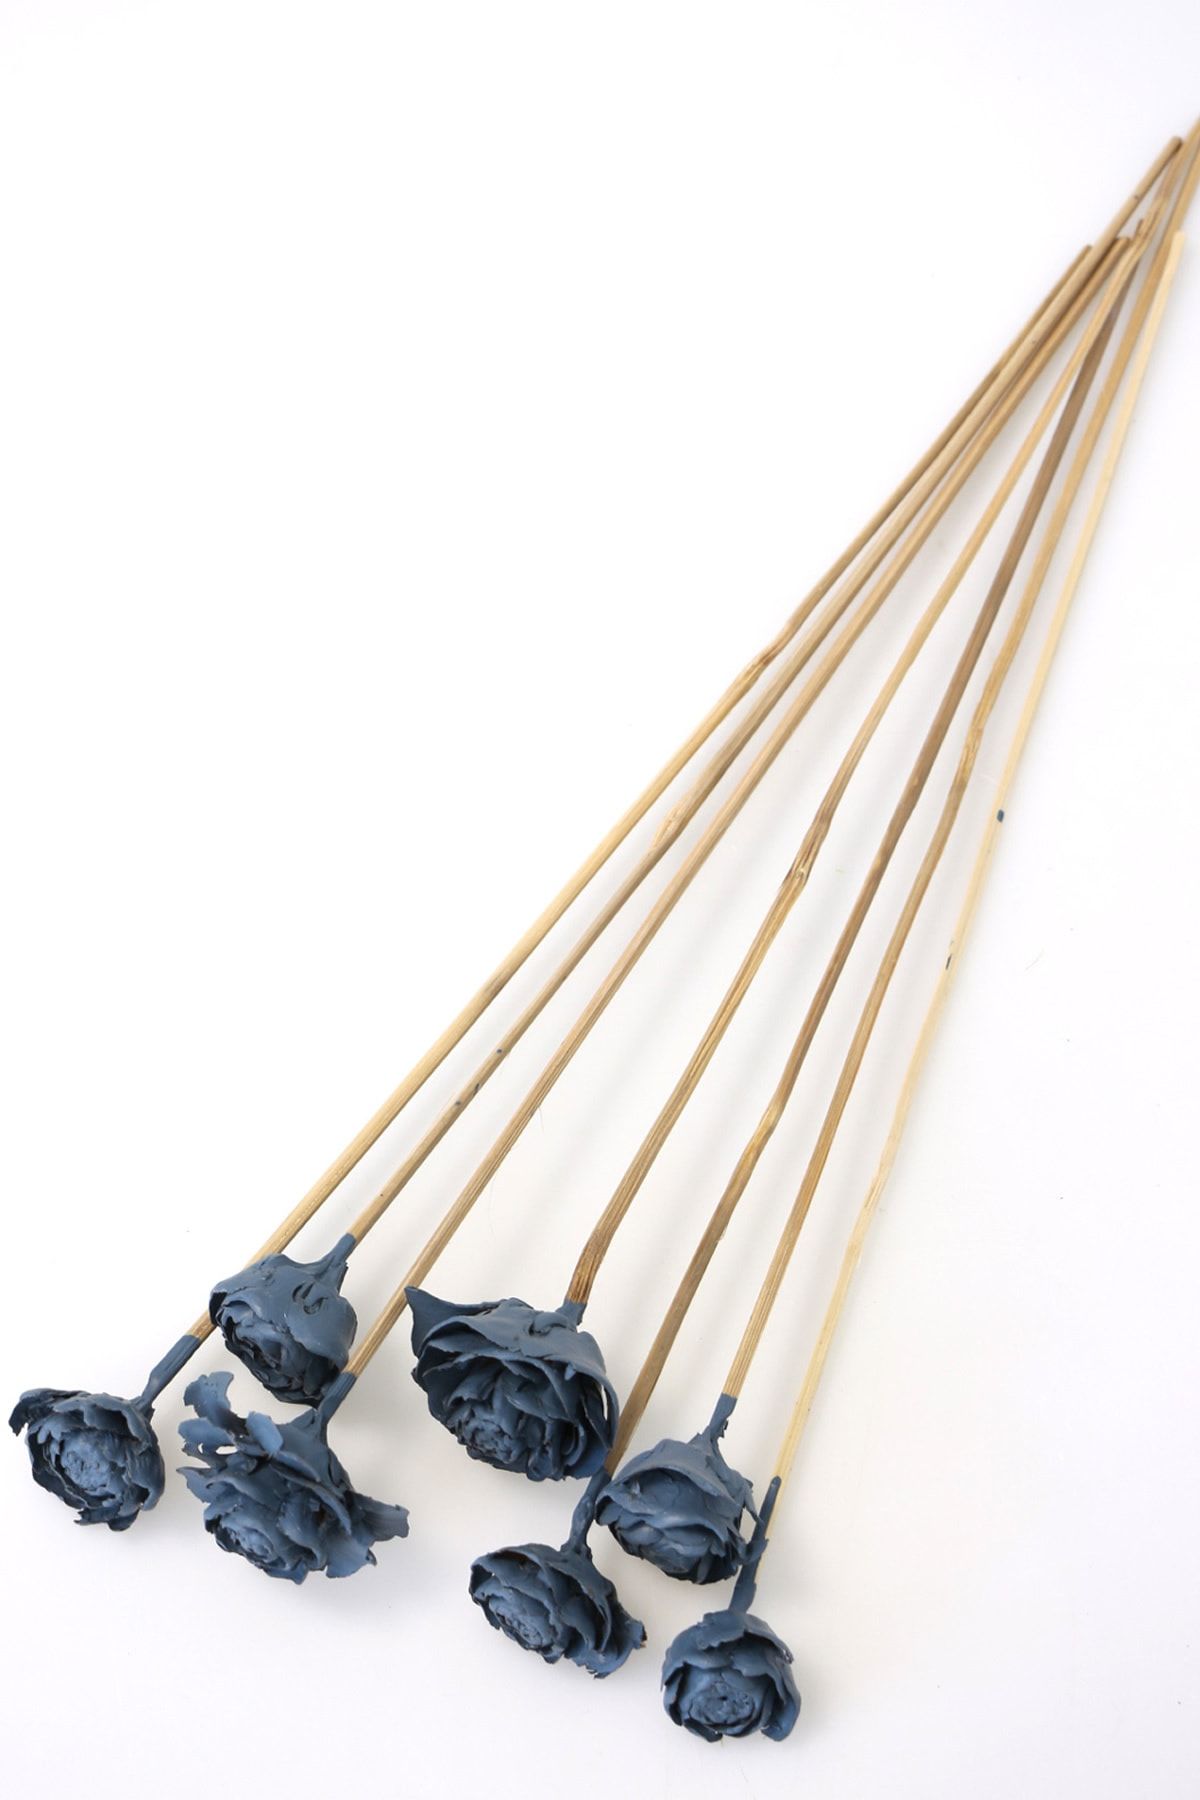 Yapay Çiçek Deposu Cedar Rose 7li Demet 45 cm Duman Mavisi